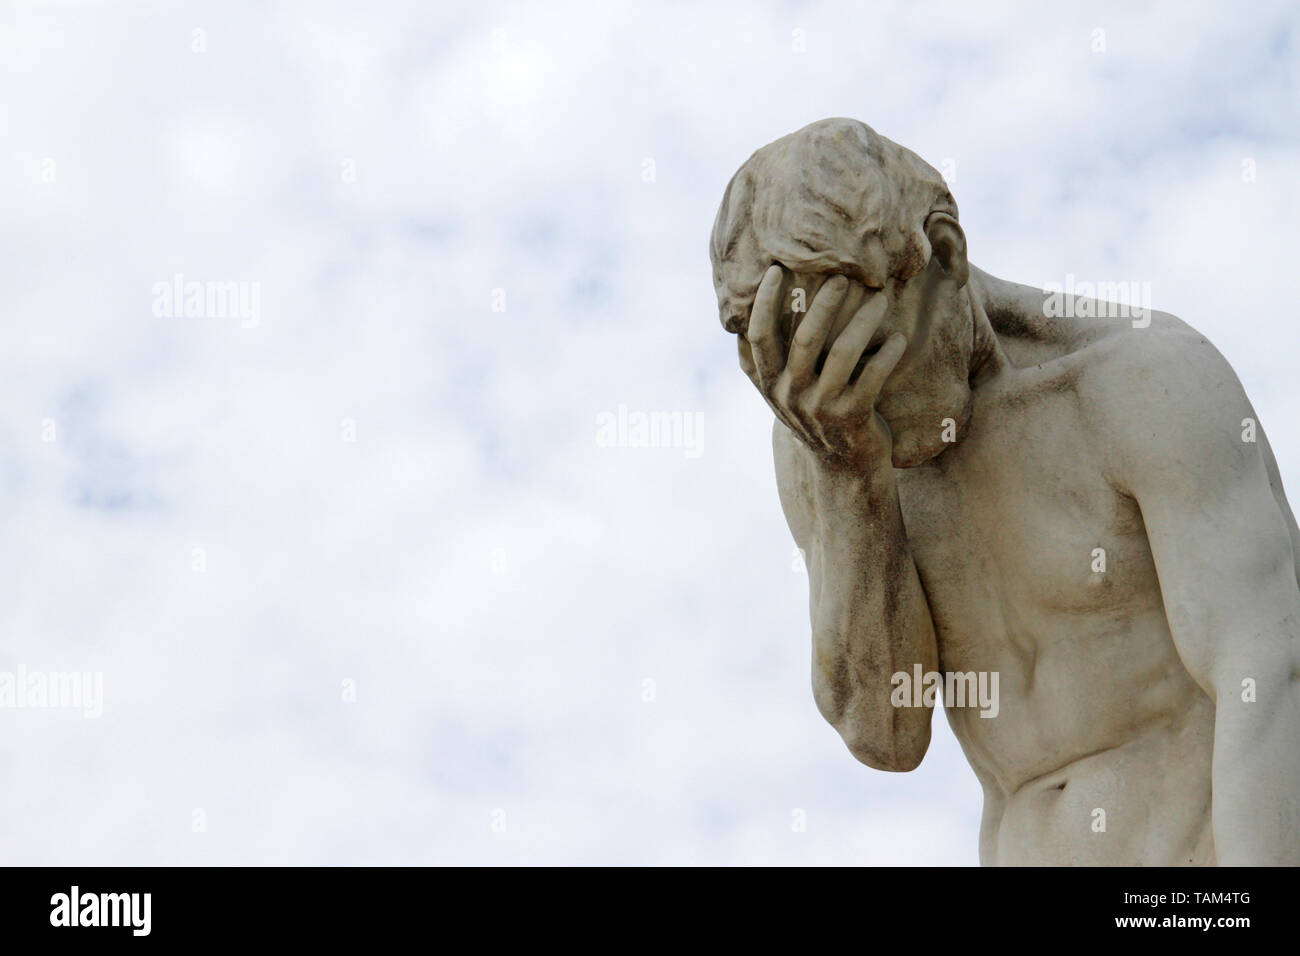 Facepalm - honte, triste, déprimé. Statue de Banque D'Images